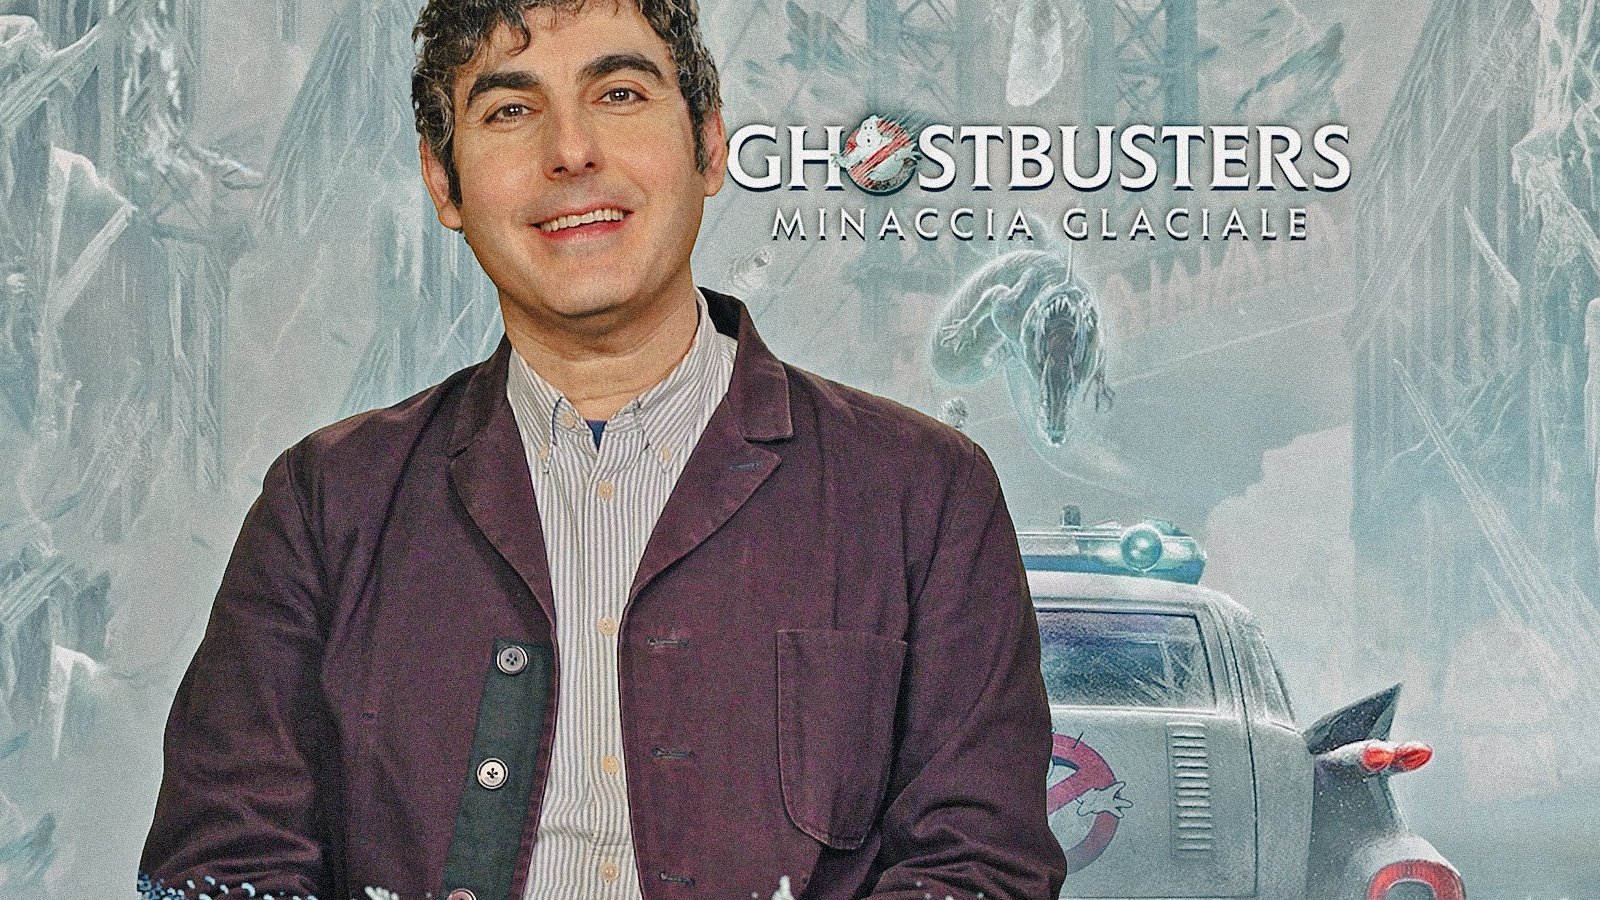 Ghostbusters - Minaccia glaciale, il regista Gil Kenan conferma: questo è un film per chi ama la serie animata